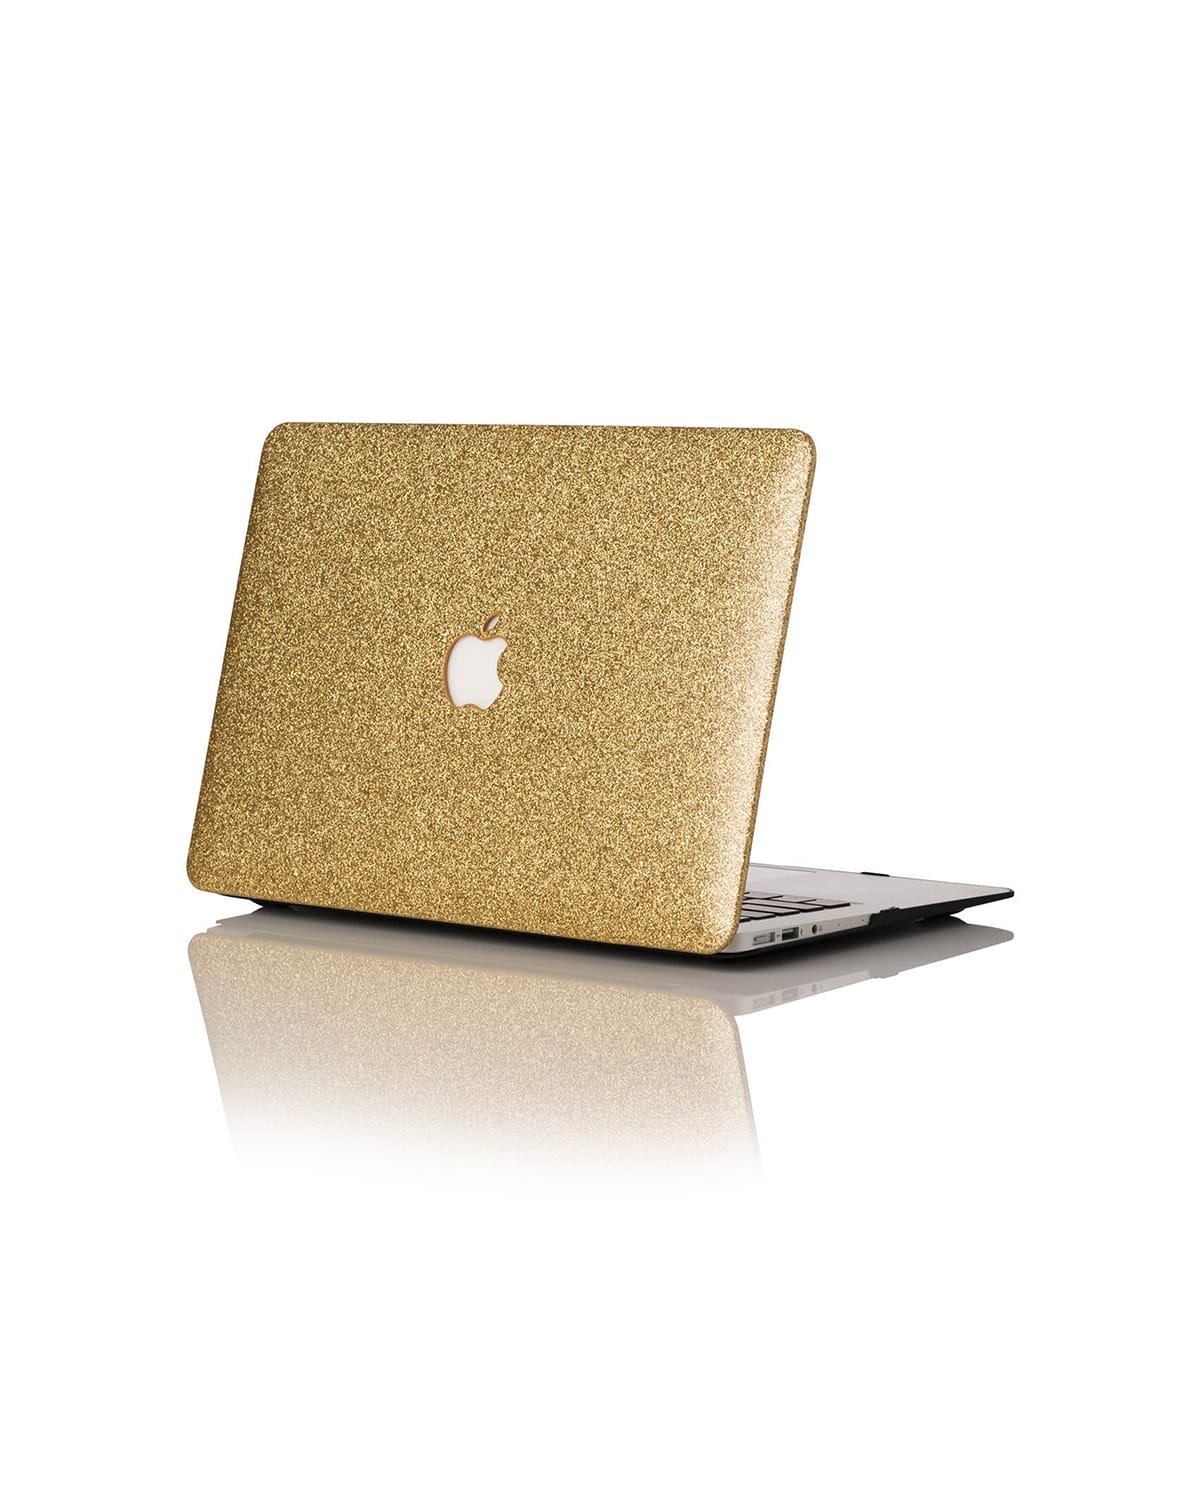 Chic Geeks Glitter 13" Macbook Pro With Touchbar Case In 14k Gold